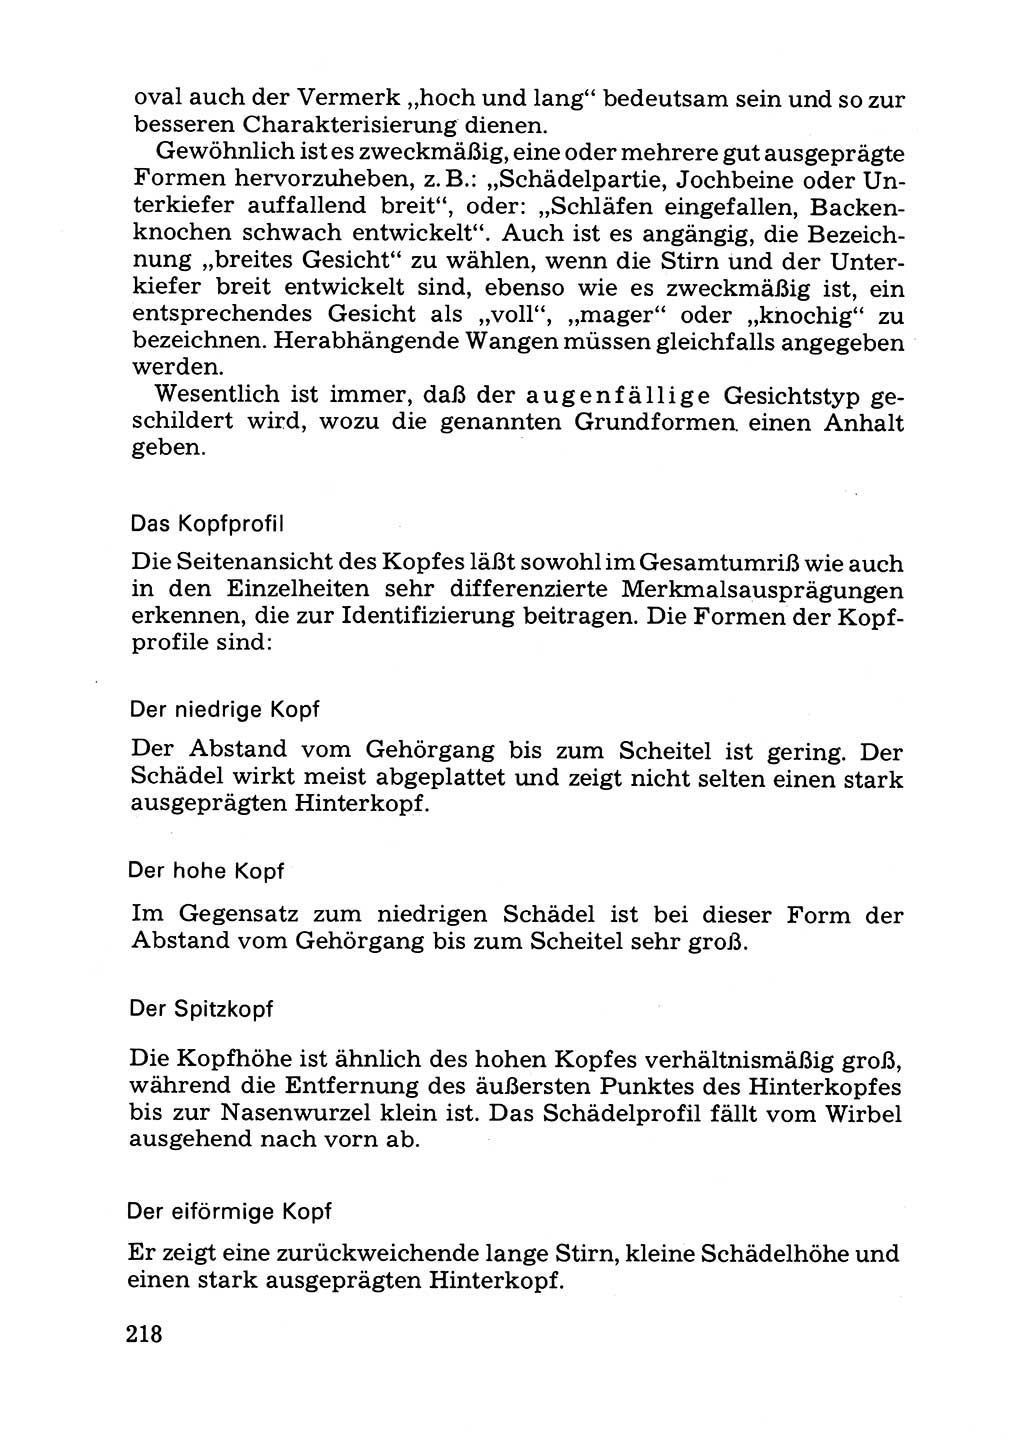 Das subjektive Porträt [Deutsche Demokratische Republik (DDR)] 1981, Seite 218 (Subj. Port. DDR 1981, S. 218)